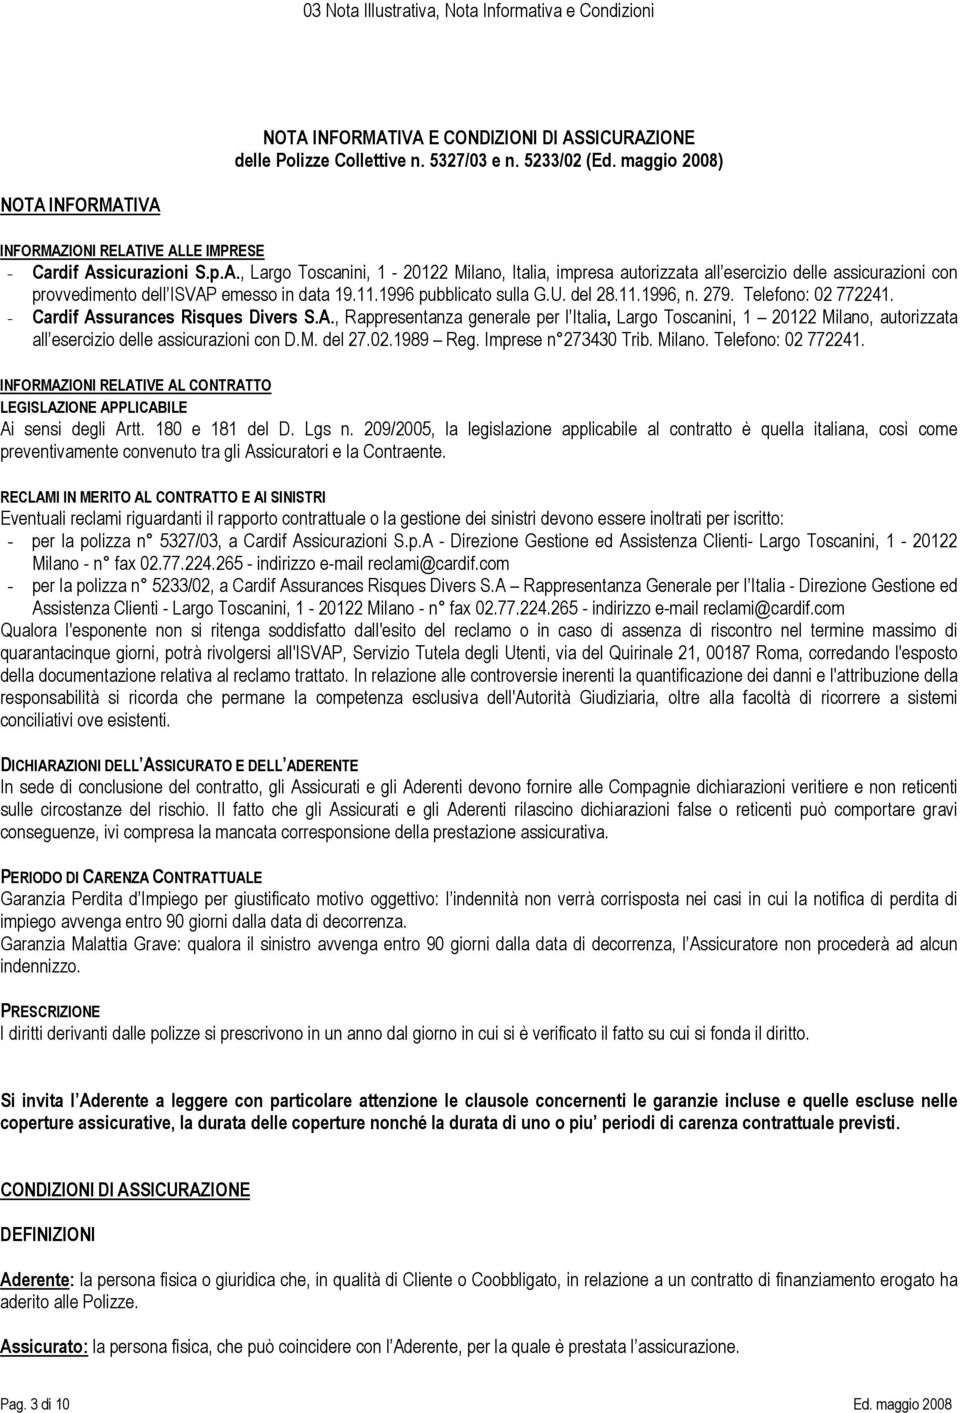 surances Risques Divers S.A., Rappresentanza generale per l Italia, Largo Toscanini, 1 20122 Milano, autorizzata all esercizio delle assicurazioni con D.M. del 27.02.1989 Reg. Imprese n 273430 Trib.